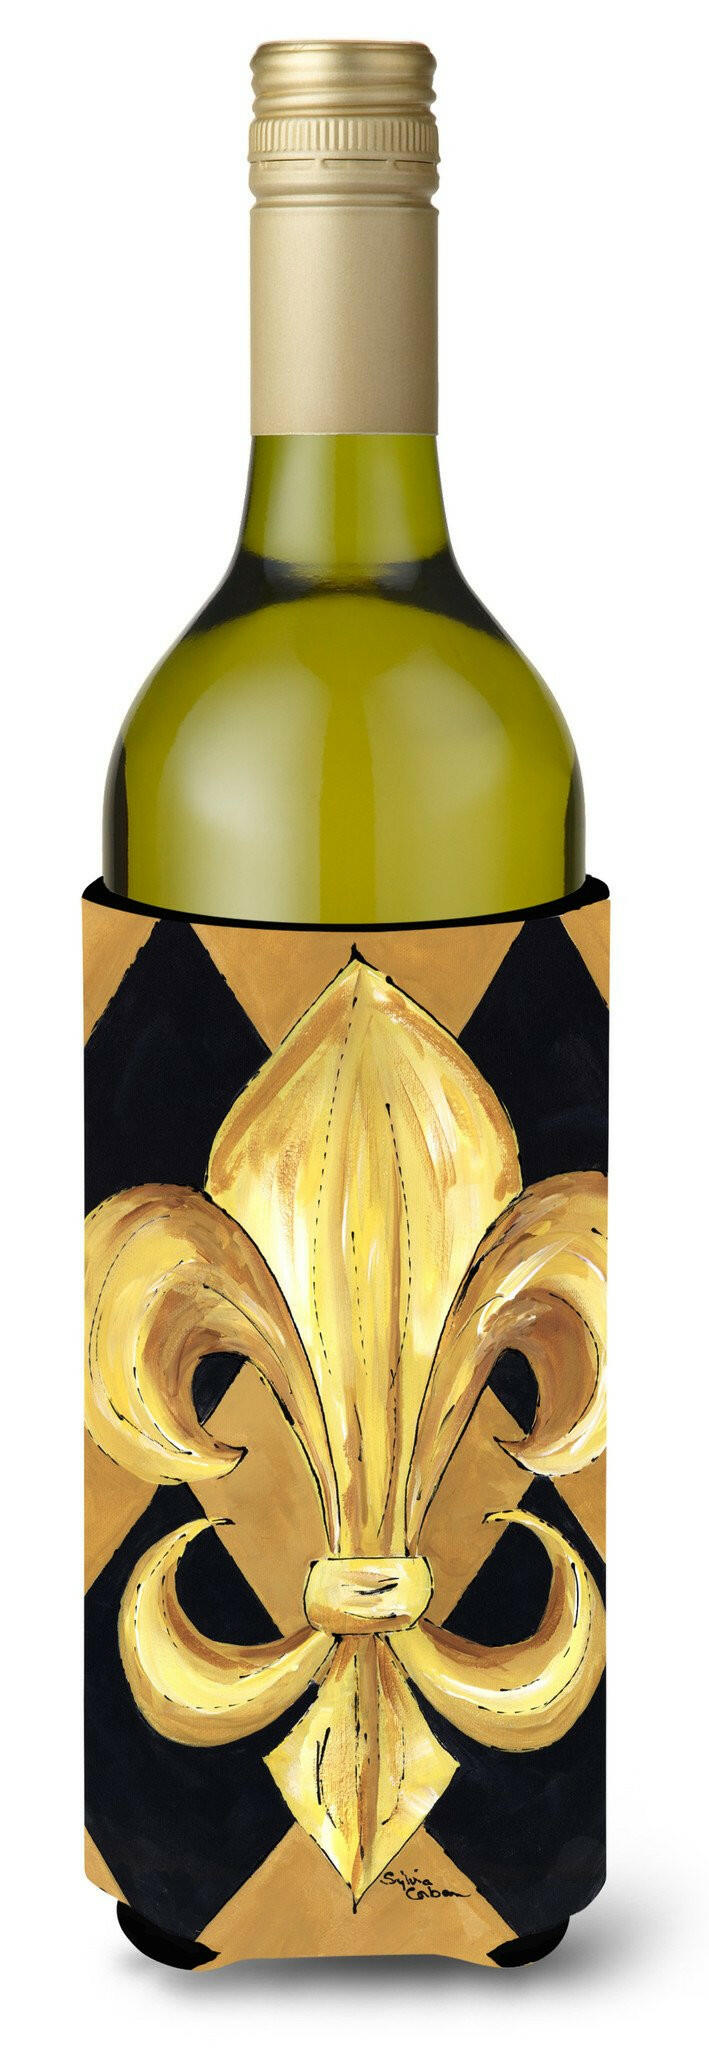 Black and Gold Fleur de lis New Orleans Wine Bottle Beverage Insulator Beverage Insulator Hugger by Caroline's Treasures